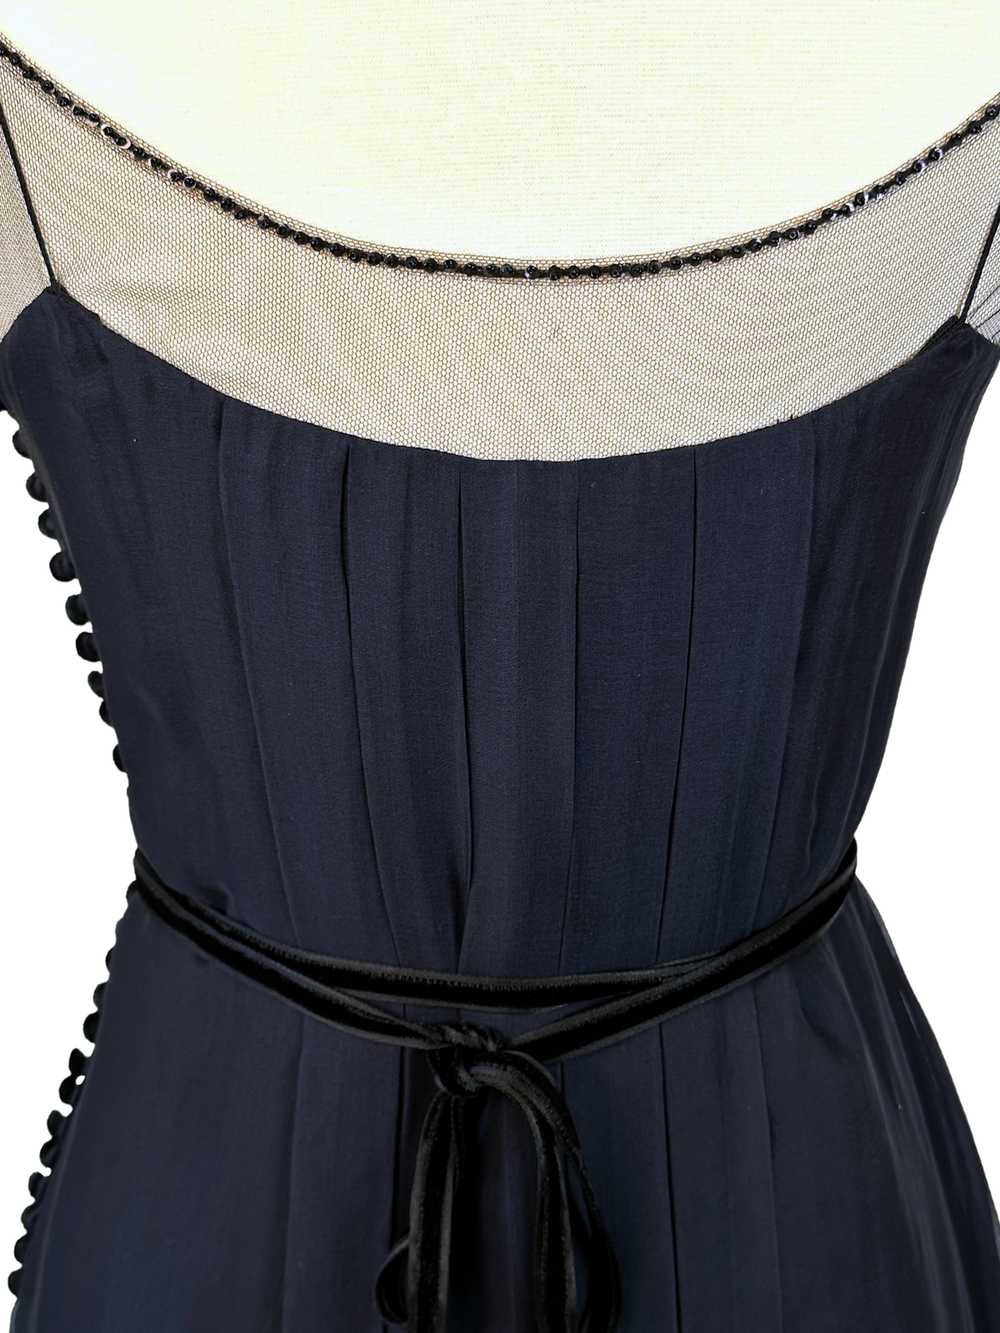 Vintage J. Mendel Navy and Black Cocktail Dress -… - image 4